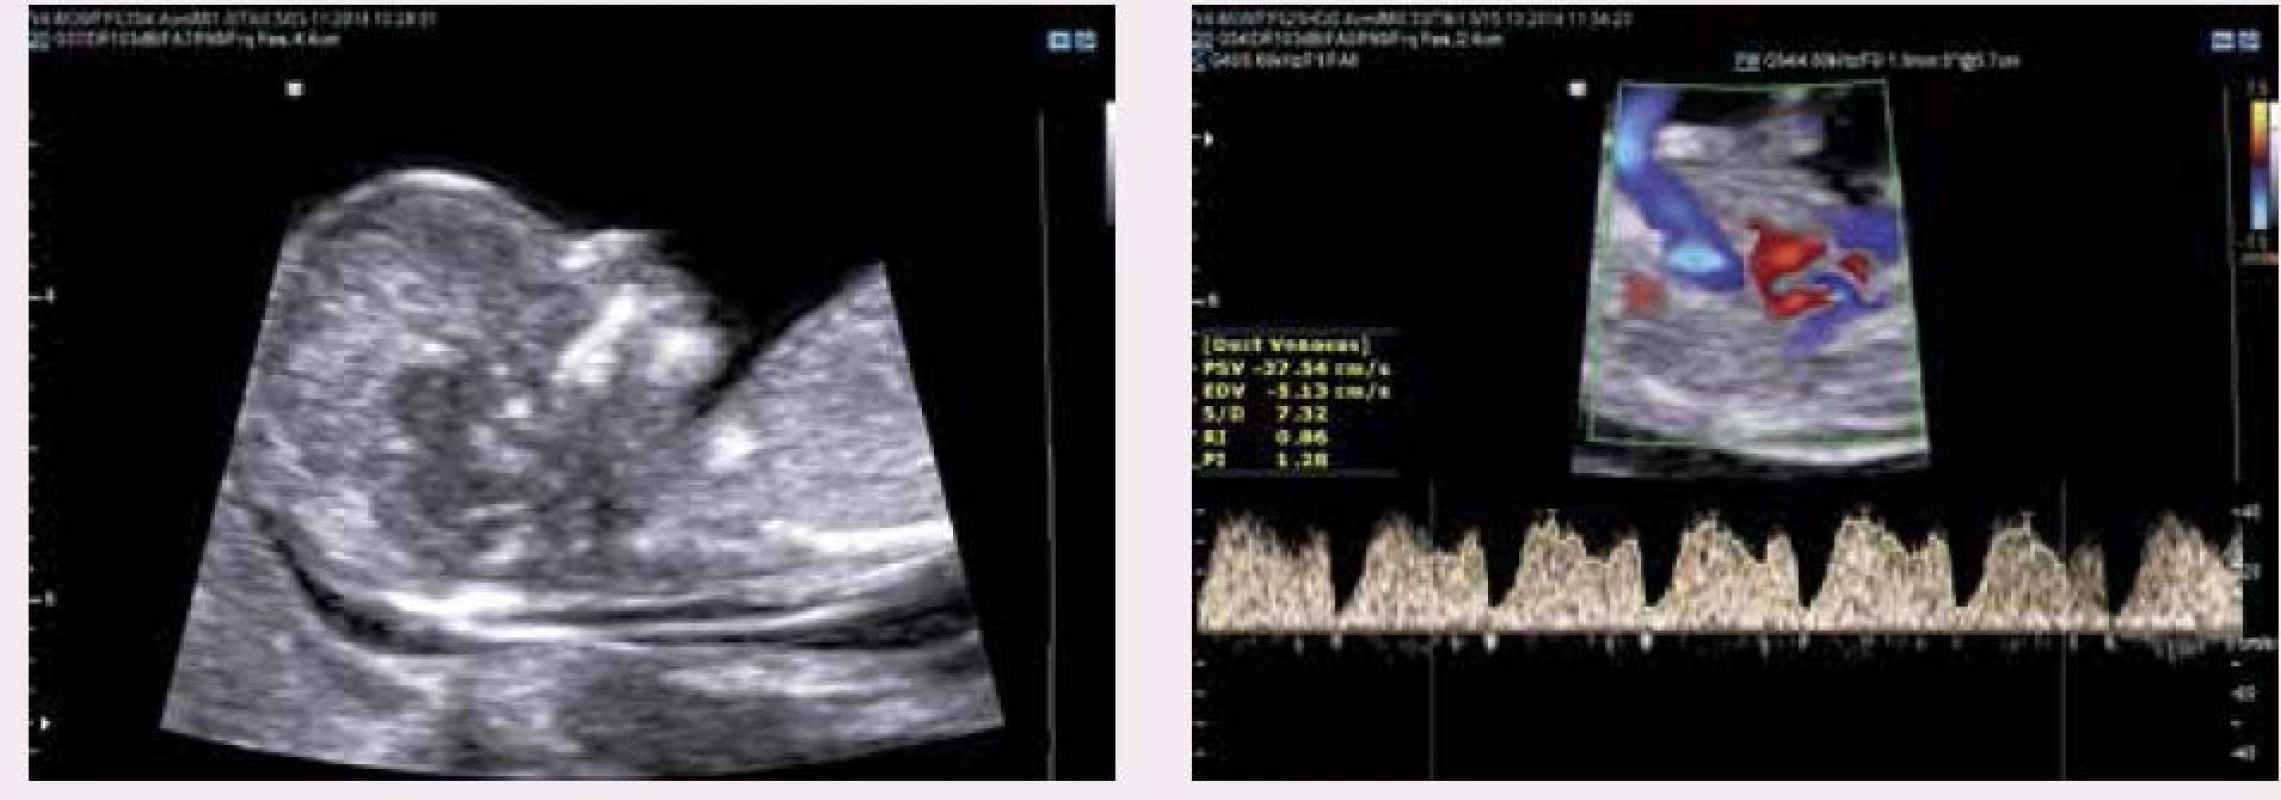 Ultrazvukové vyšetření novějších prvotrimestrálních markerů Downova syndromu dle FMF protokolu (normální nálezy): (a) nosní kůstky (b) dopplerovské vyšetření trojcípé chlopně (c) dopplerovské vyšetření PI v ductus venosus